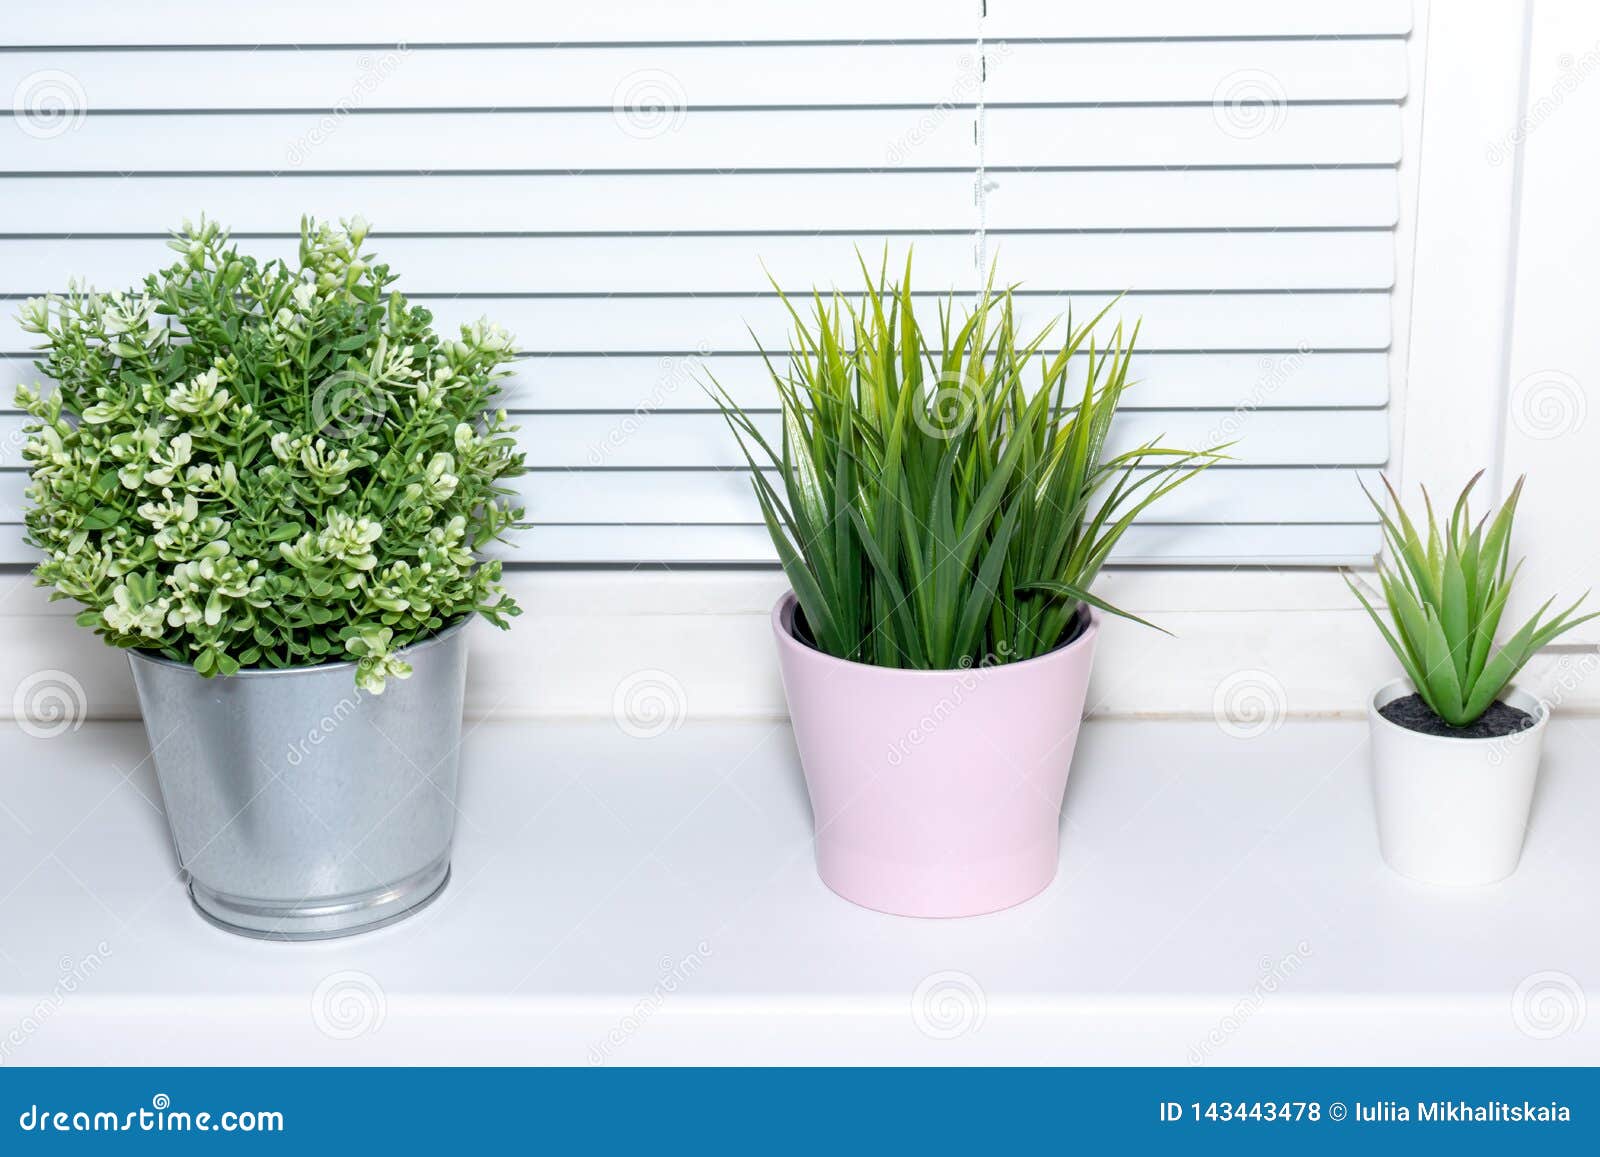 Green Plants In Flower Pots On Window Sill Bright Modern